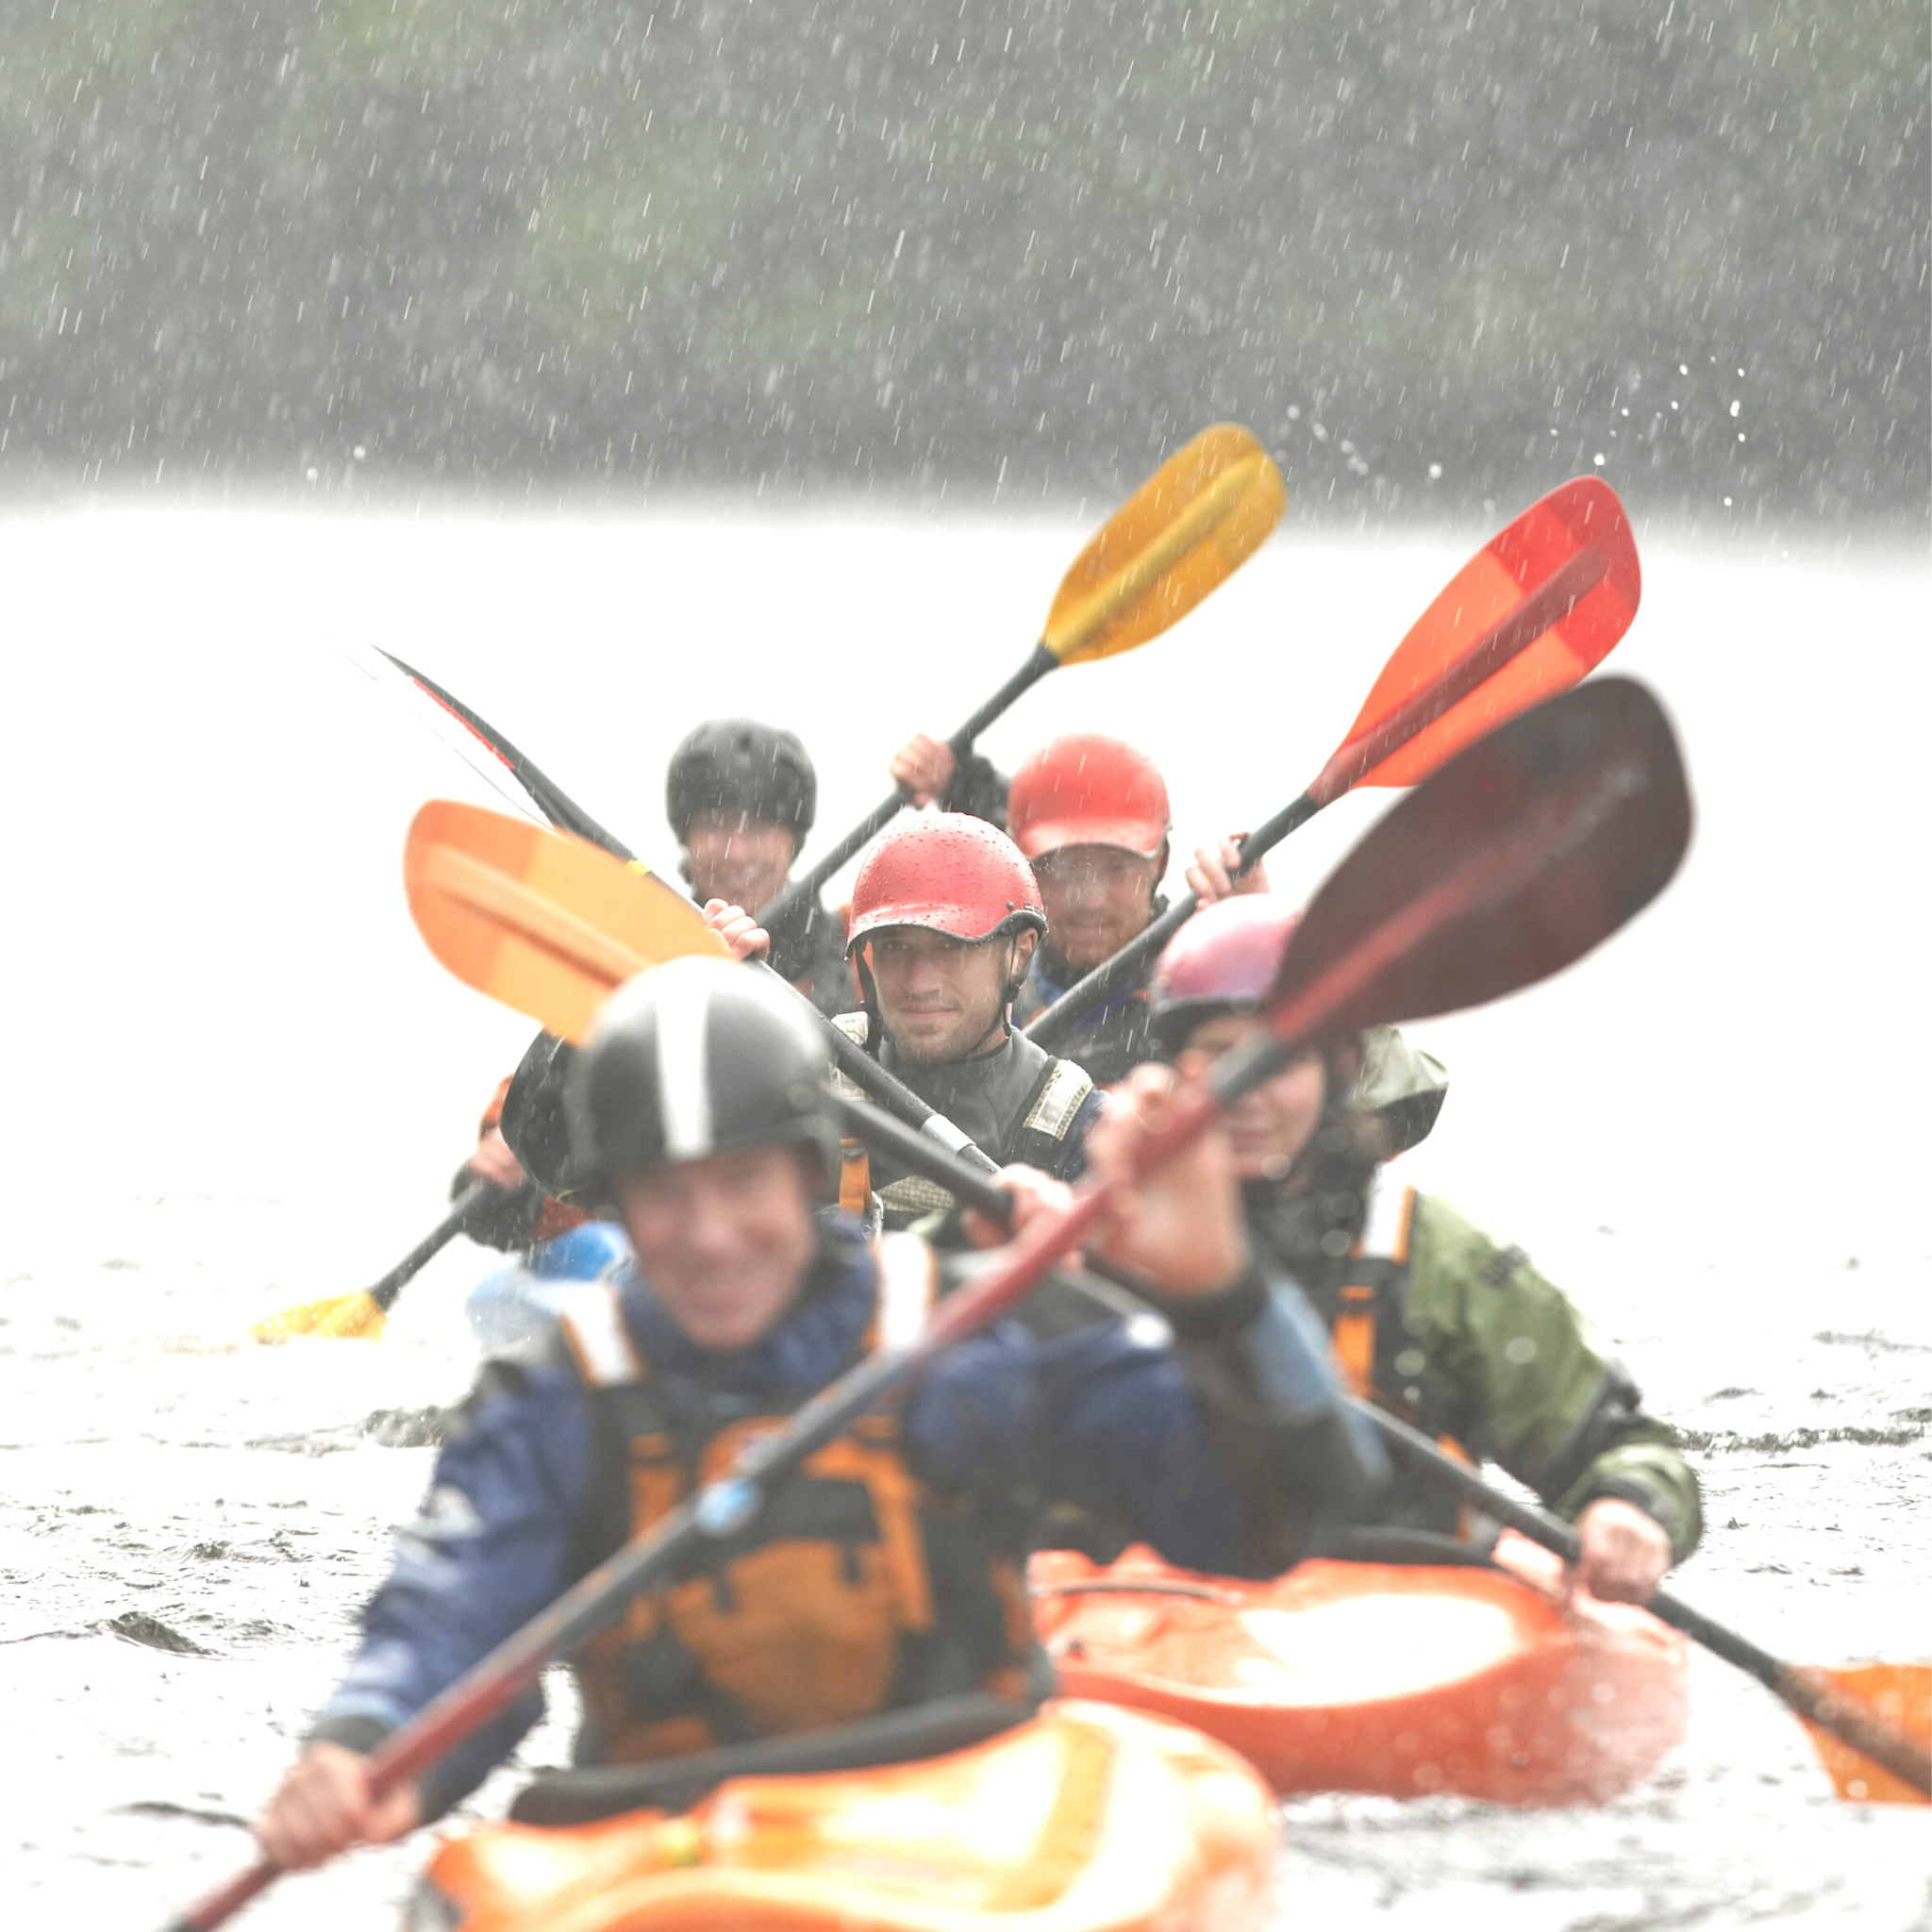 Kayaking Group Adventure